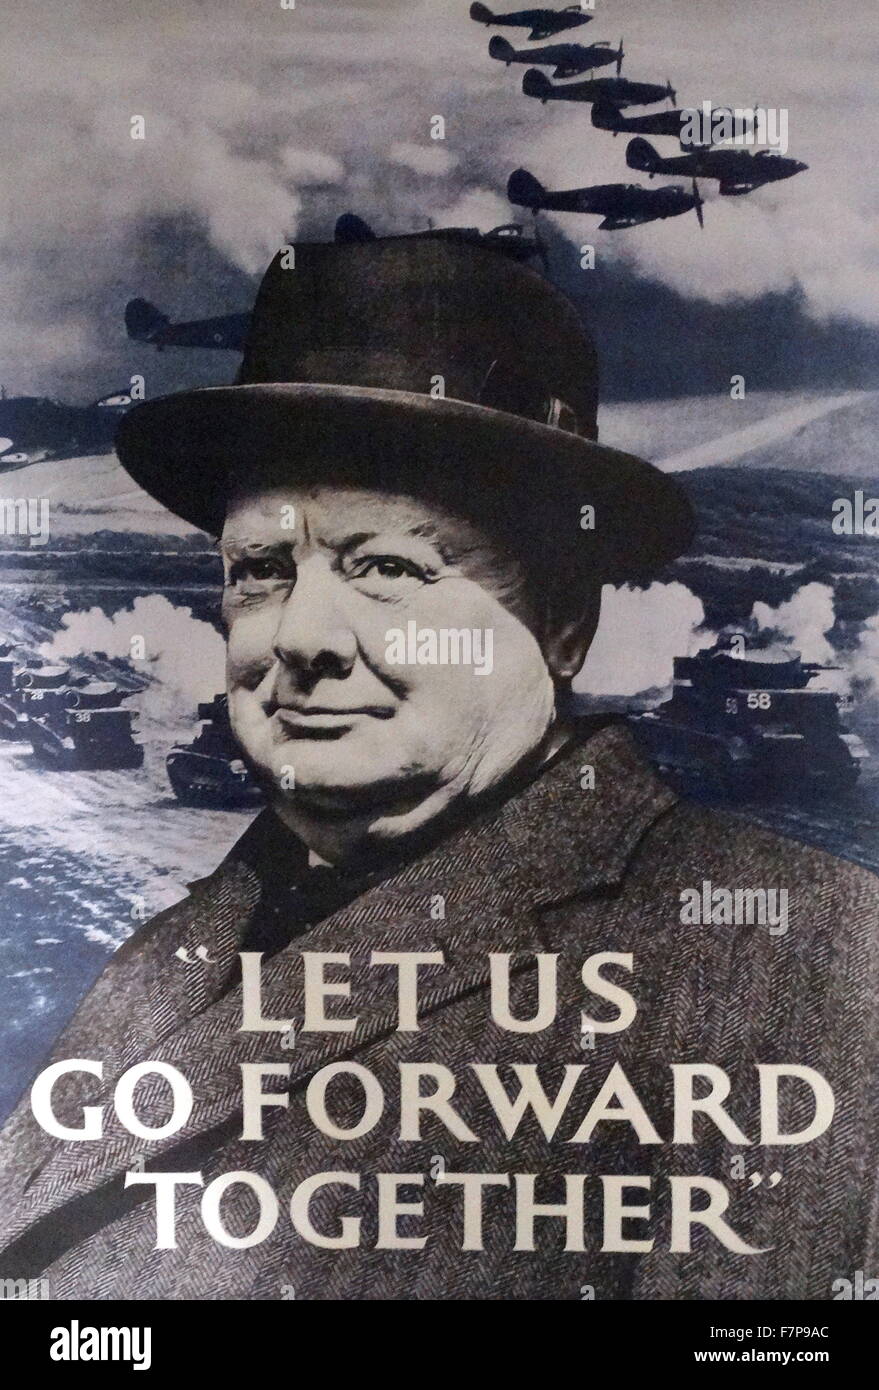 PM Winston Churchill-Londra Inghilterra-RITRATTO POSTER-opera d'arte davvero cool!!! 